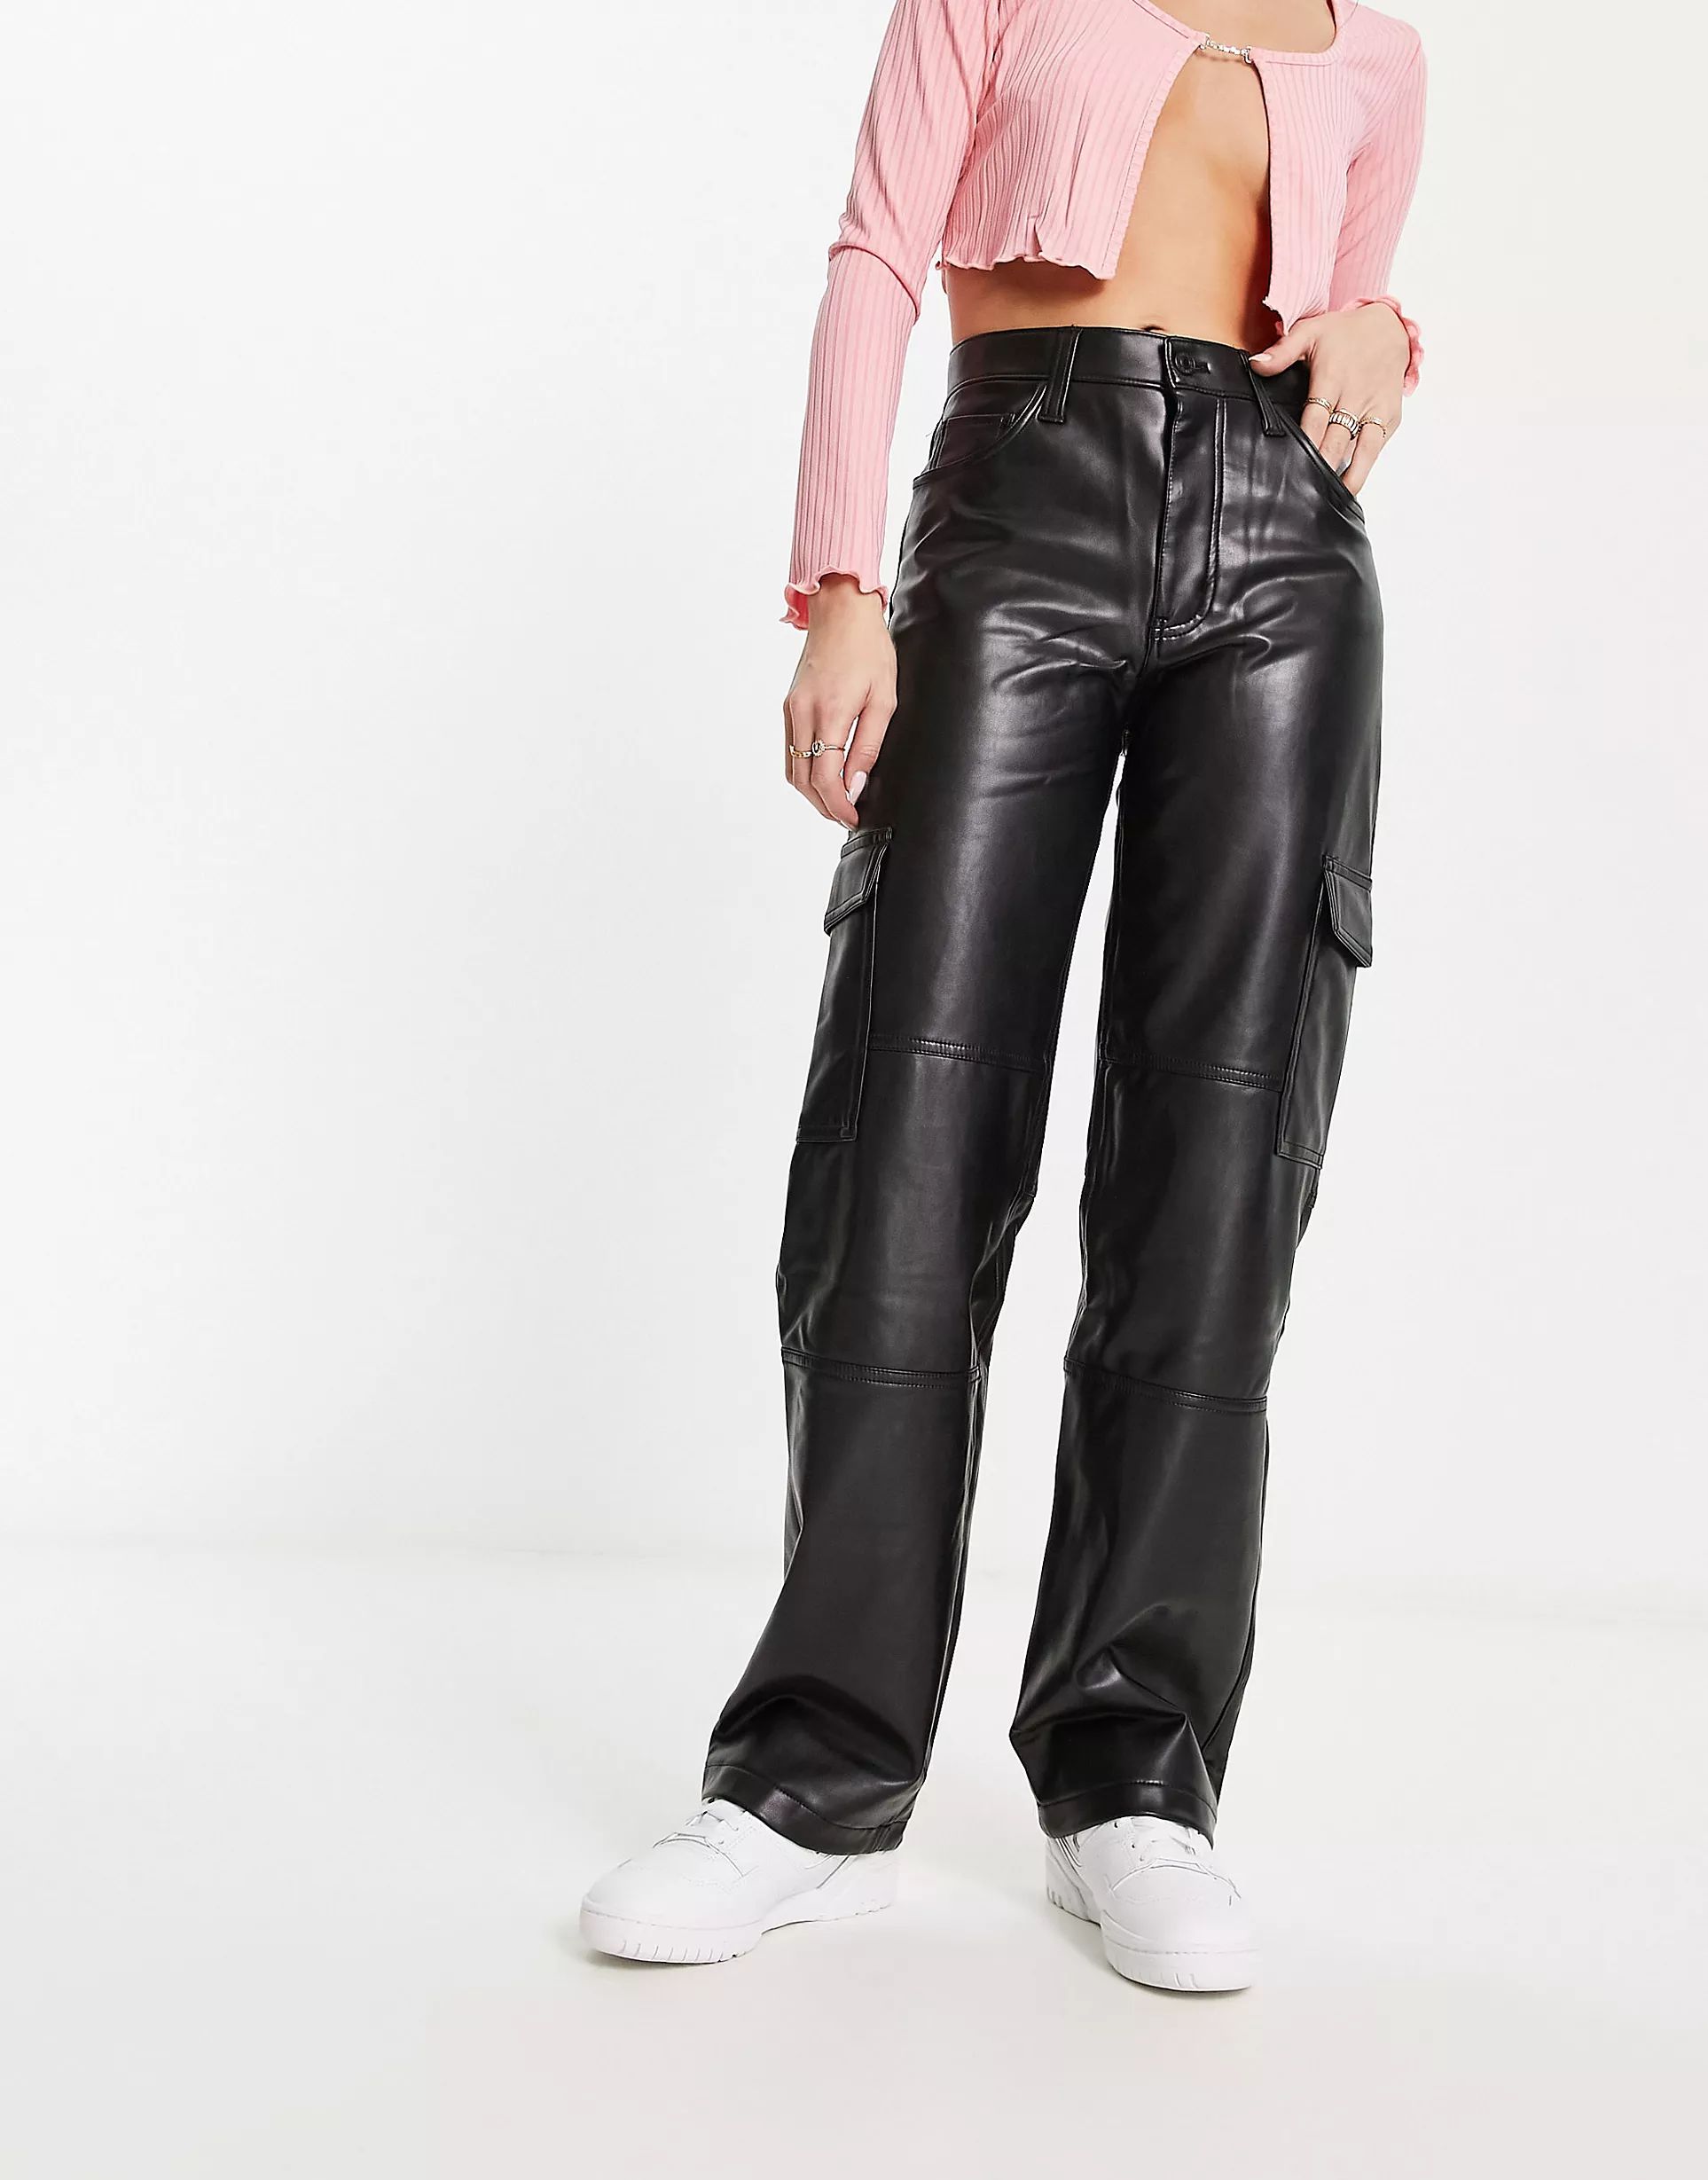 Abercrombie & Fitch - Pantalon cargo décontracté imitation cuir style années 90 - Noir | ASOS (Global)